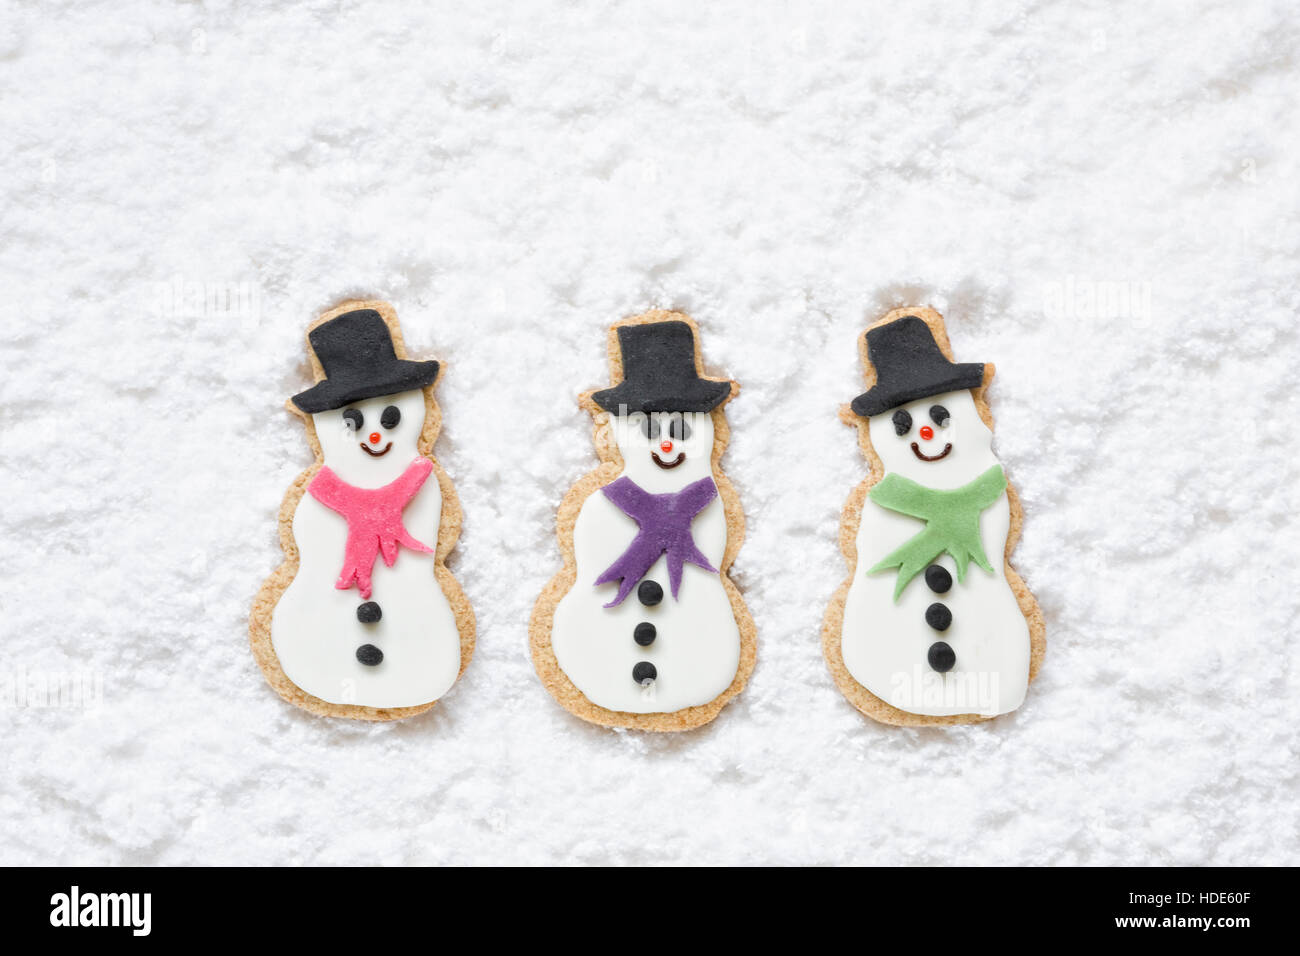 Drei hausgemachte Schneemänner Kekse auf einem verschneiten Hintergrund. Stockfoto